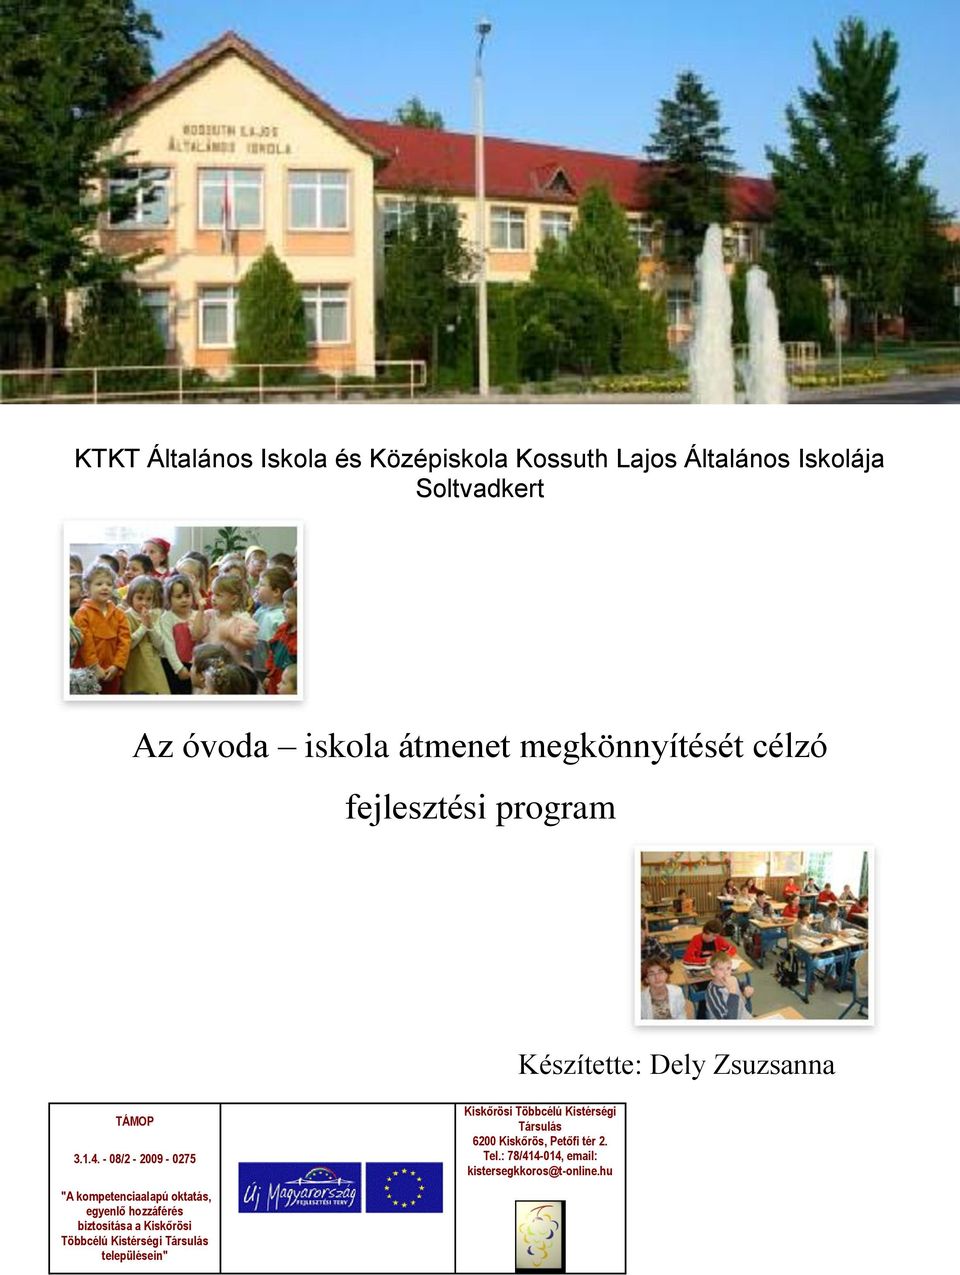 - 08/2-2009 - 0275 "A kompetenciaalapú oktatás, egyenlő hozzáférés biztosítása a Kiskőrösi Többcélú Kistérségi